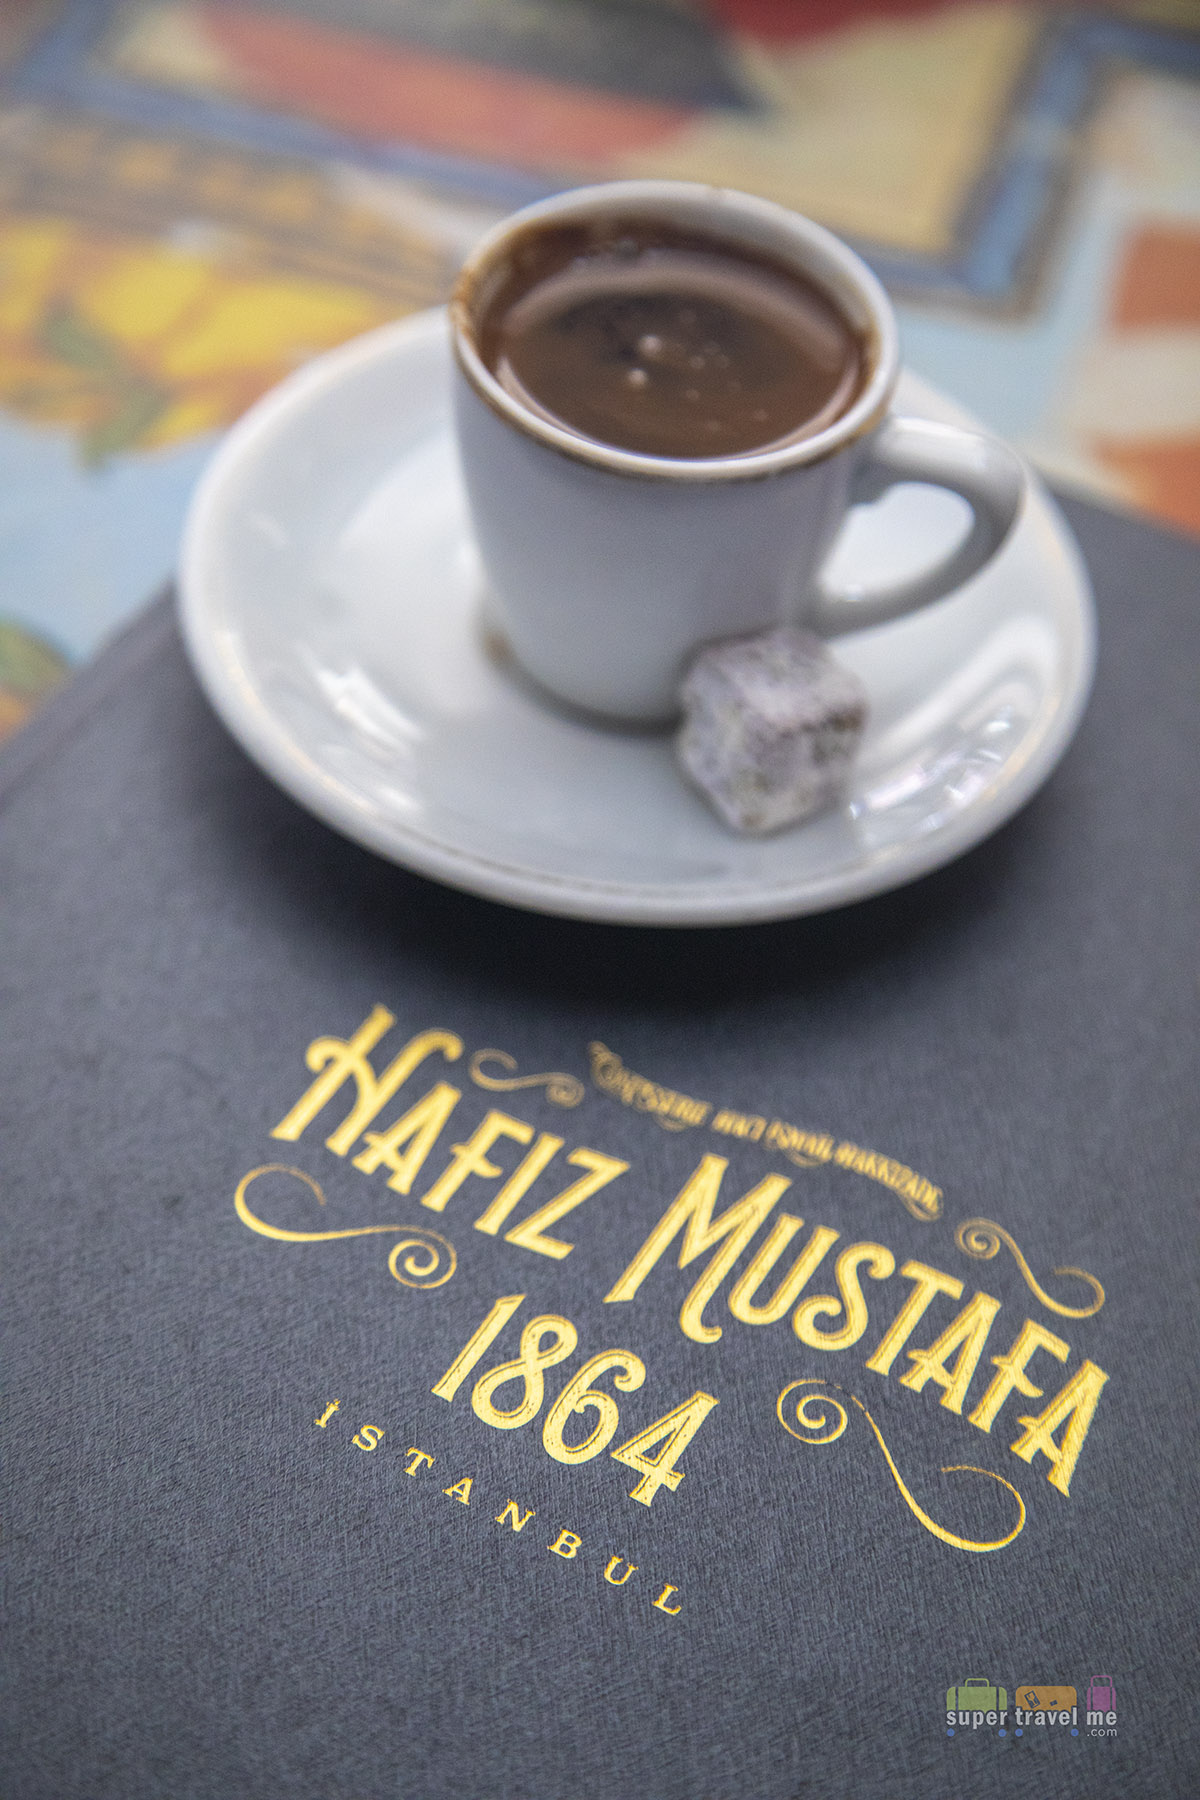 Hafiz Mustafa Turkish Coffee